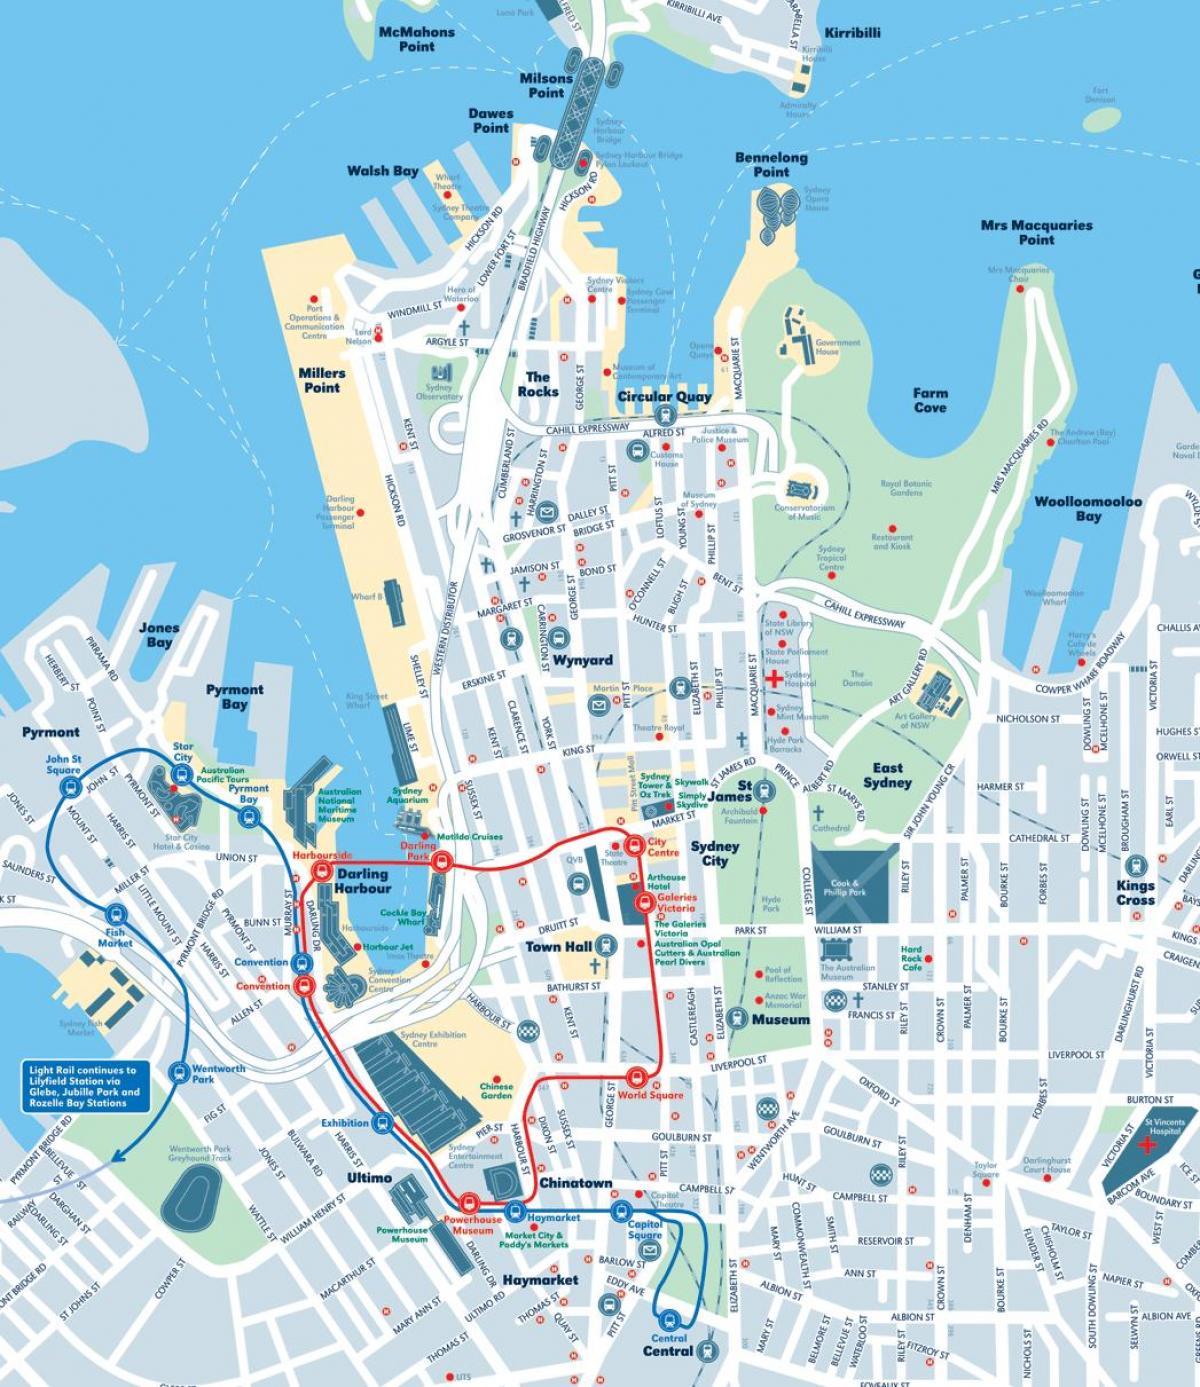 mapa da cidade de sydney